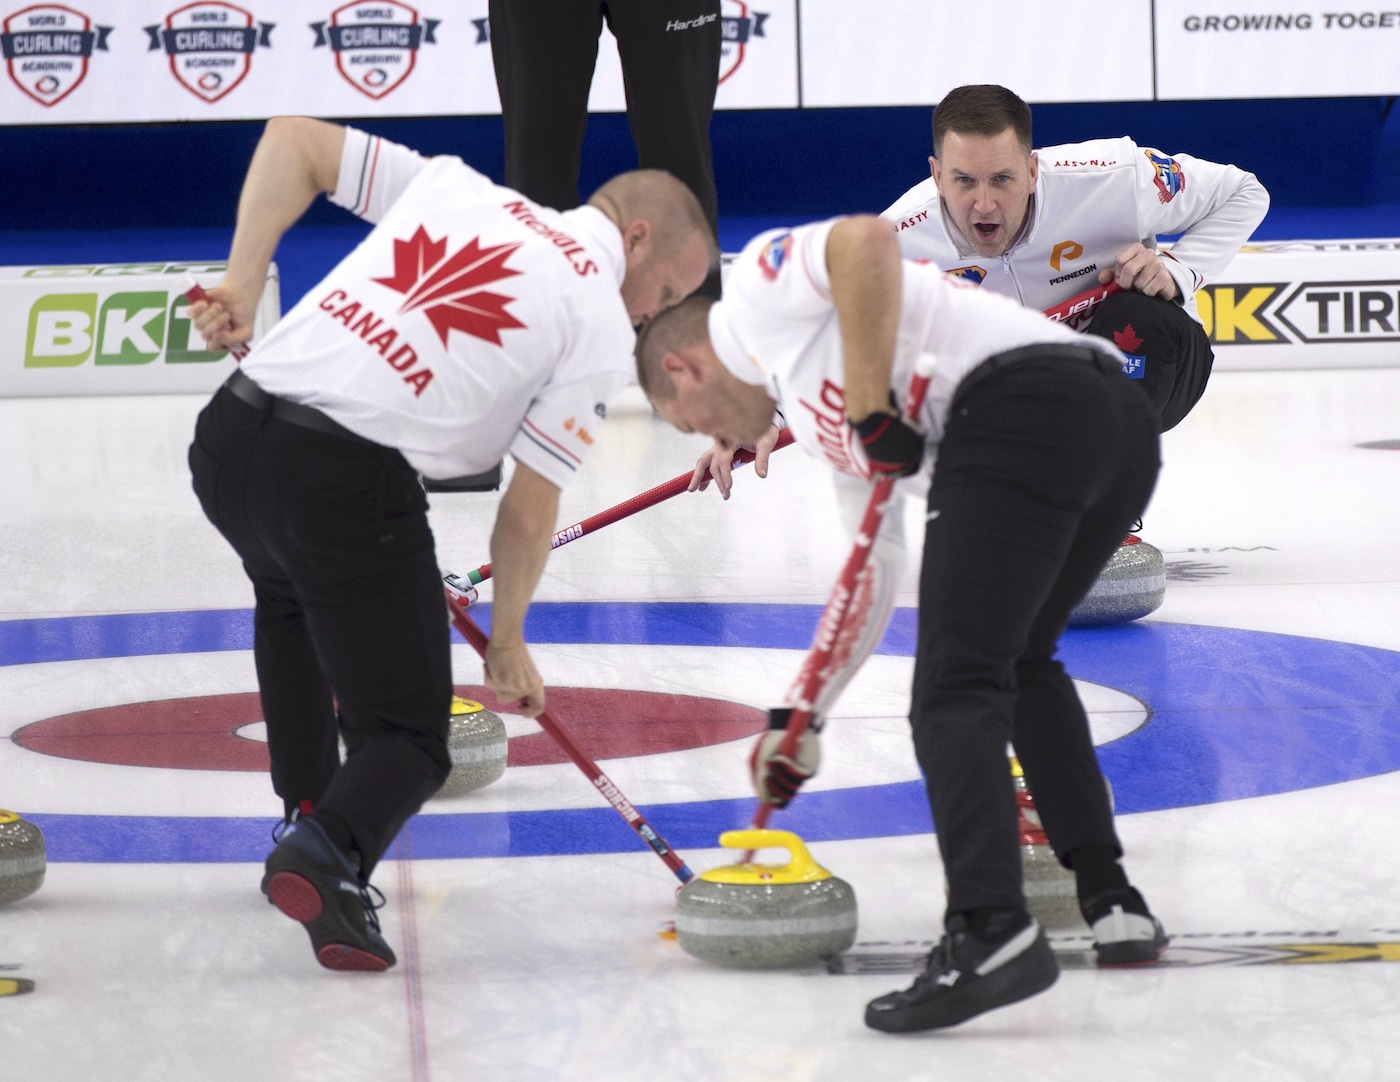 Curling Canada Top spot!